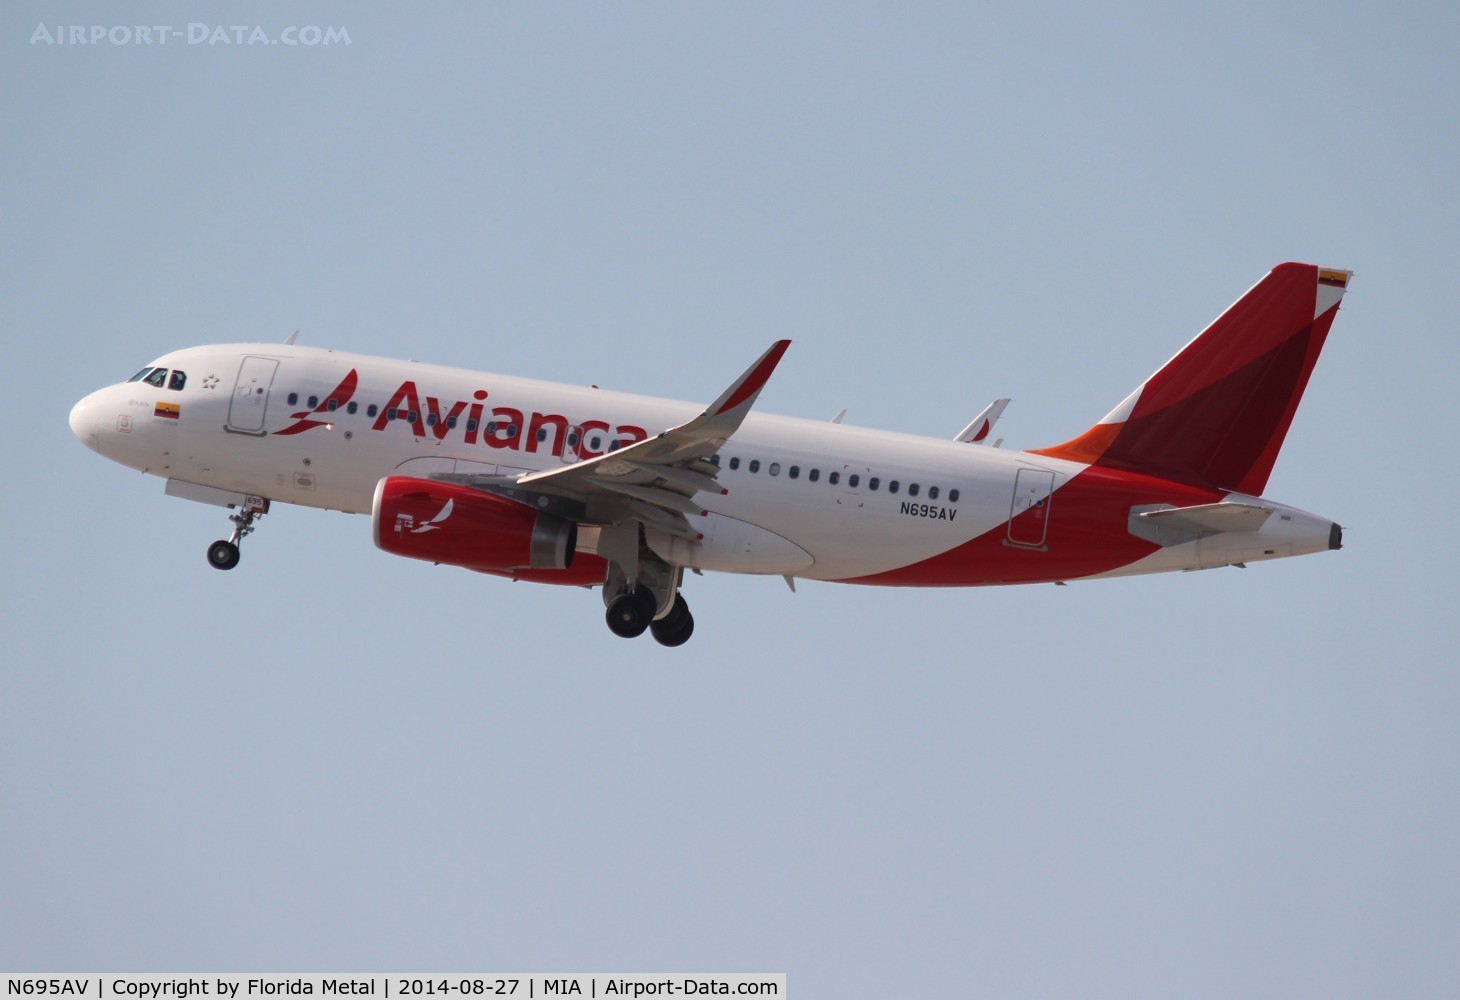 N695AV, 2014 Airbus A319-132 C/N 6099, Avianca